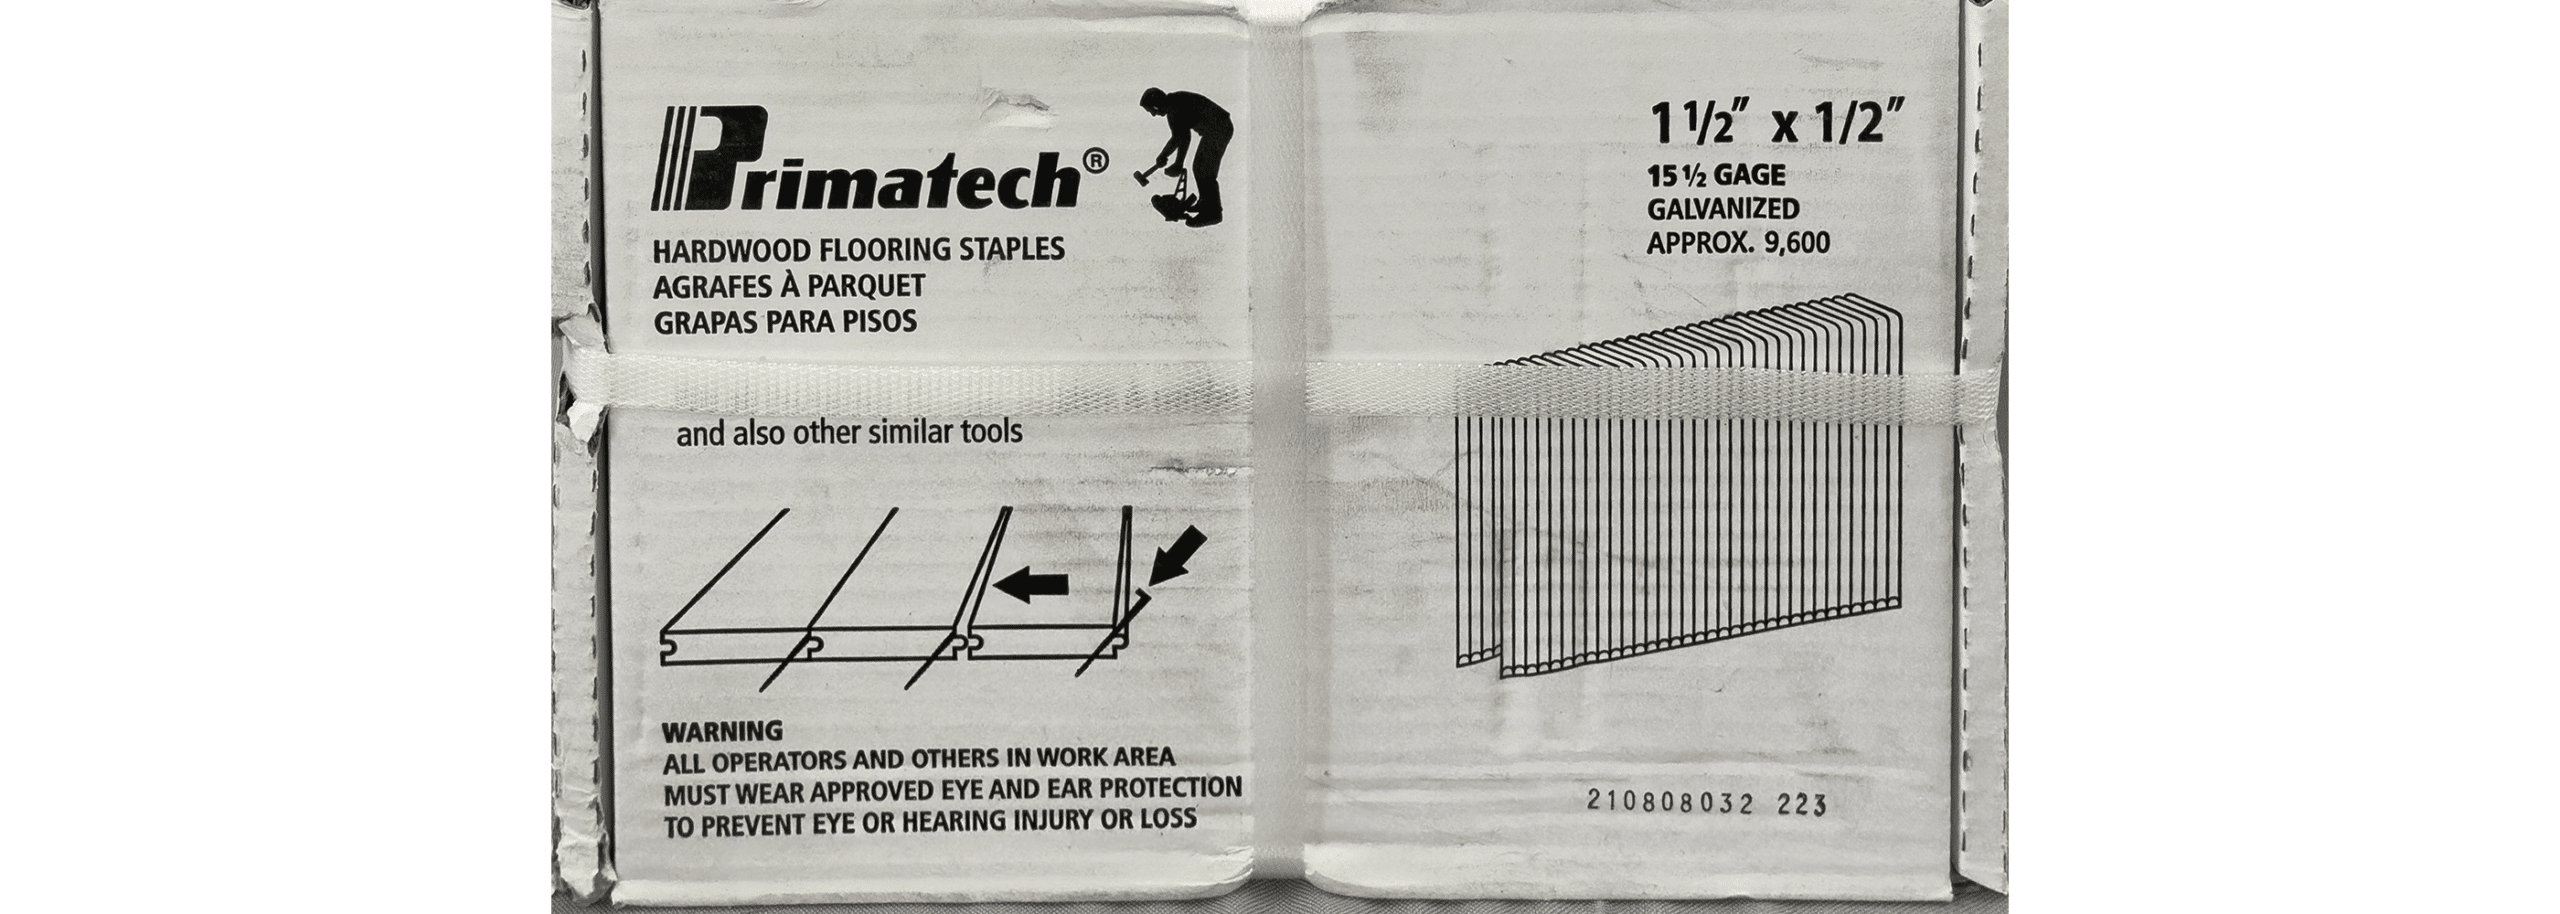 primatech 1-1/2x1/4 staples